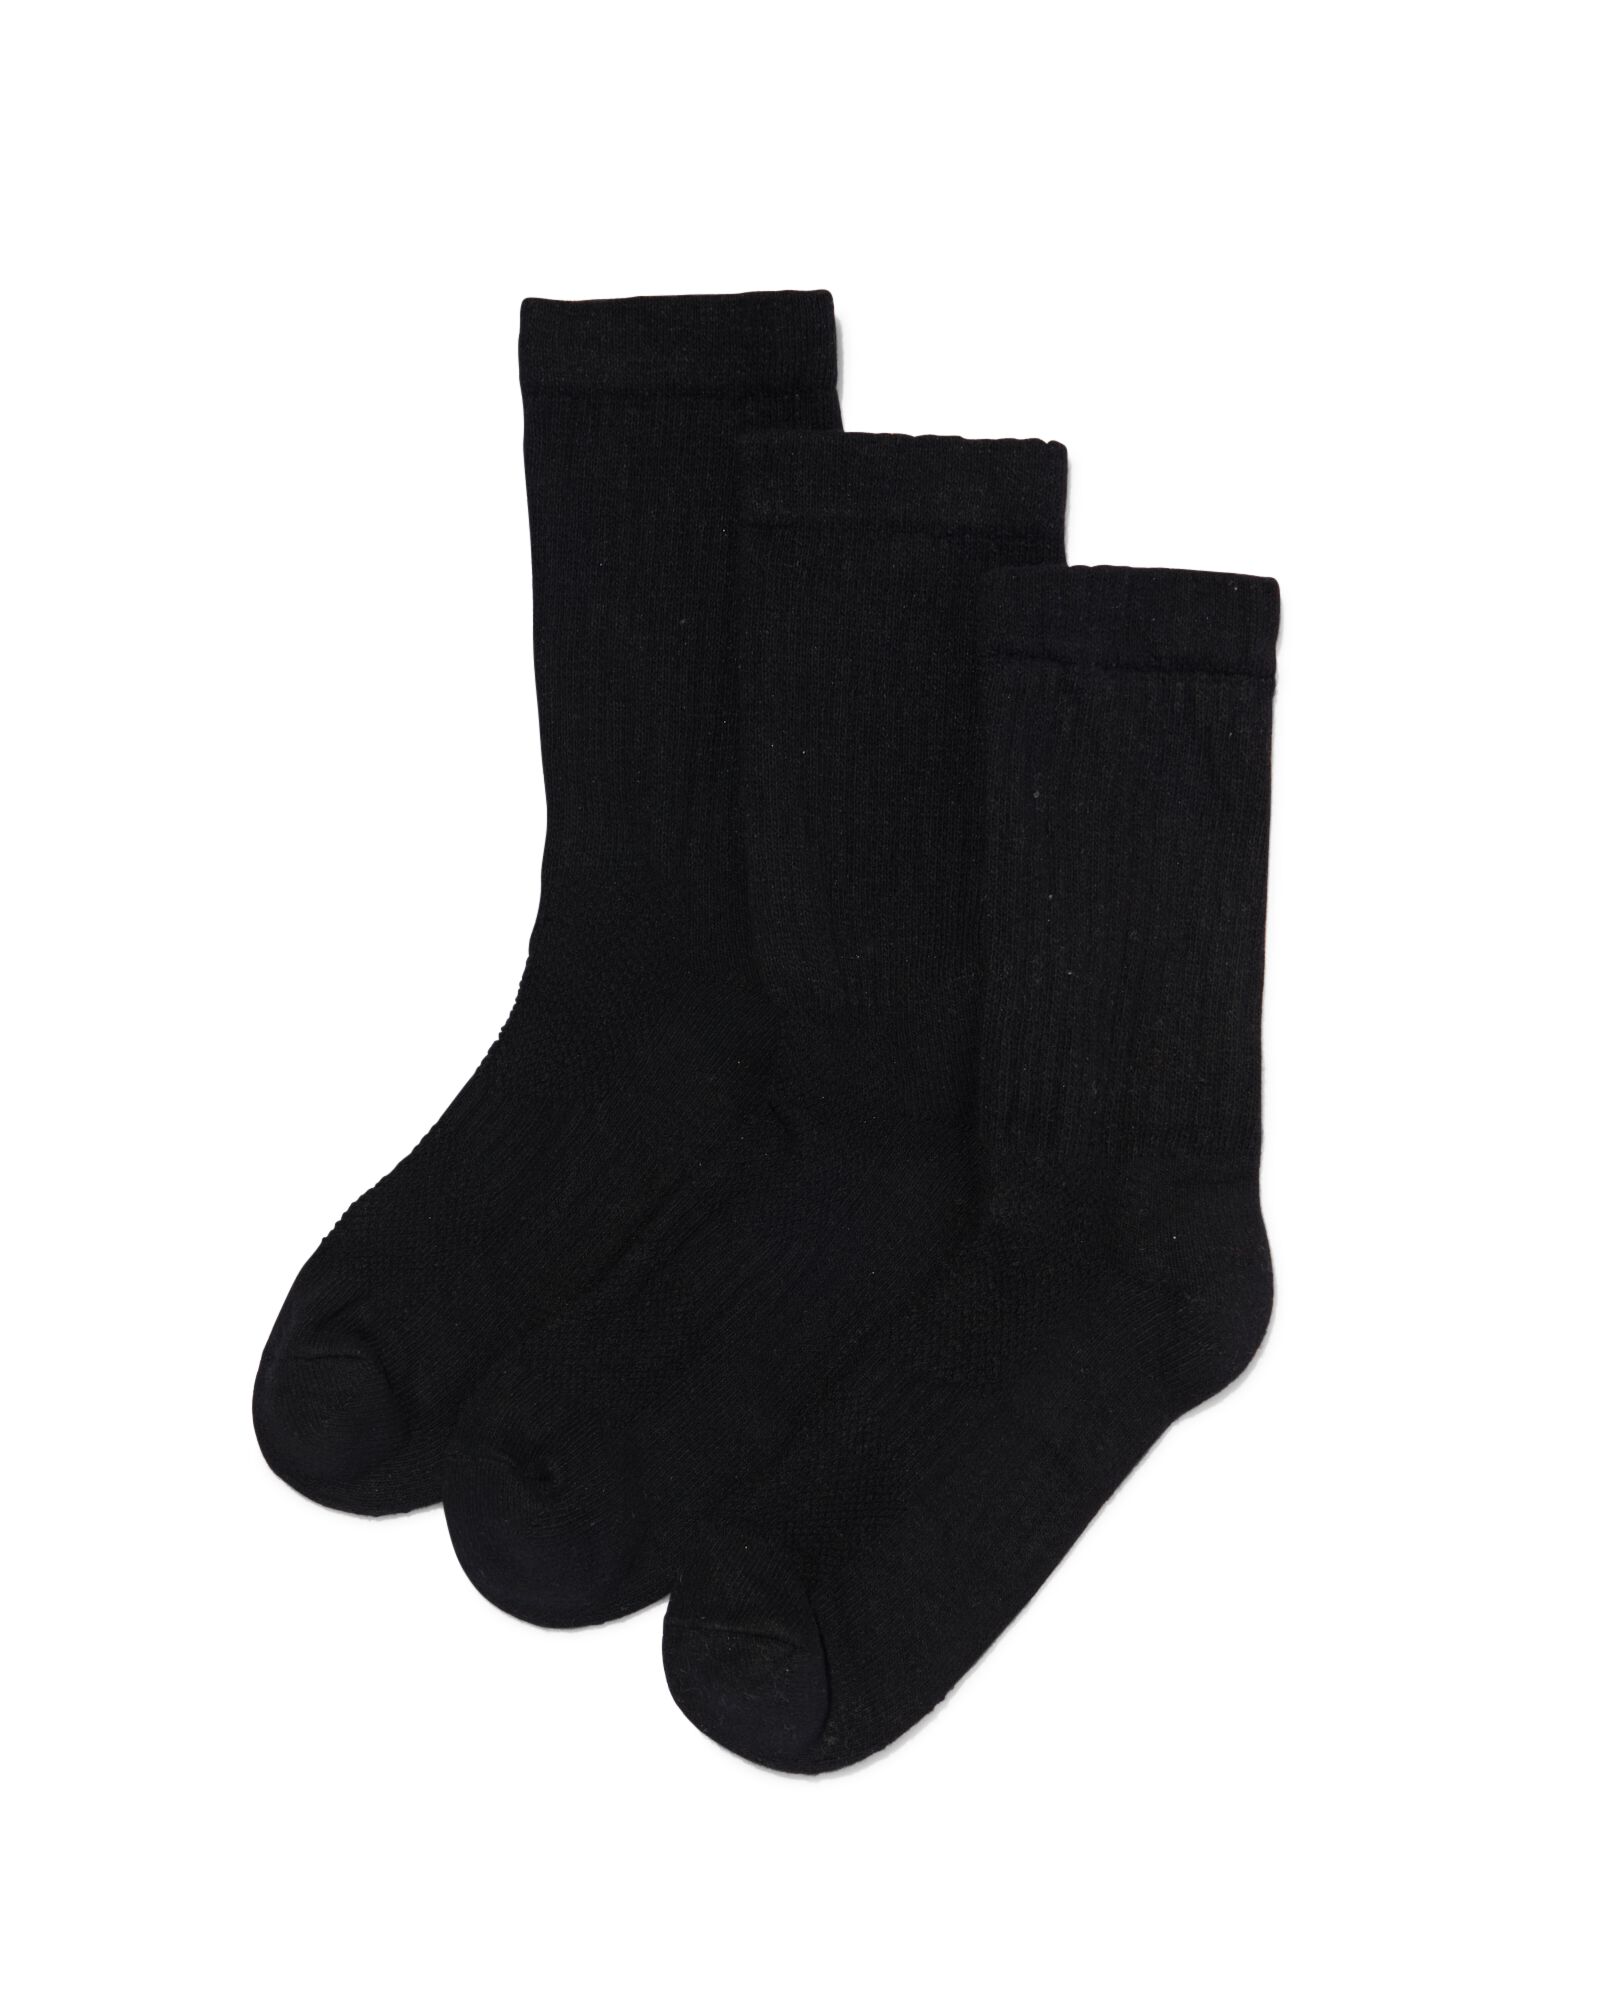 3 paires de chaussettes de sport homme noir - HEMA